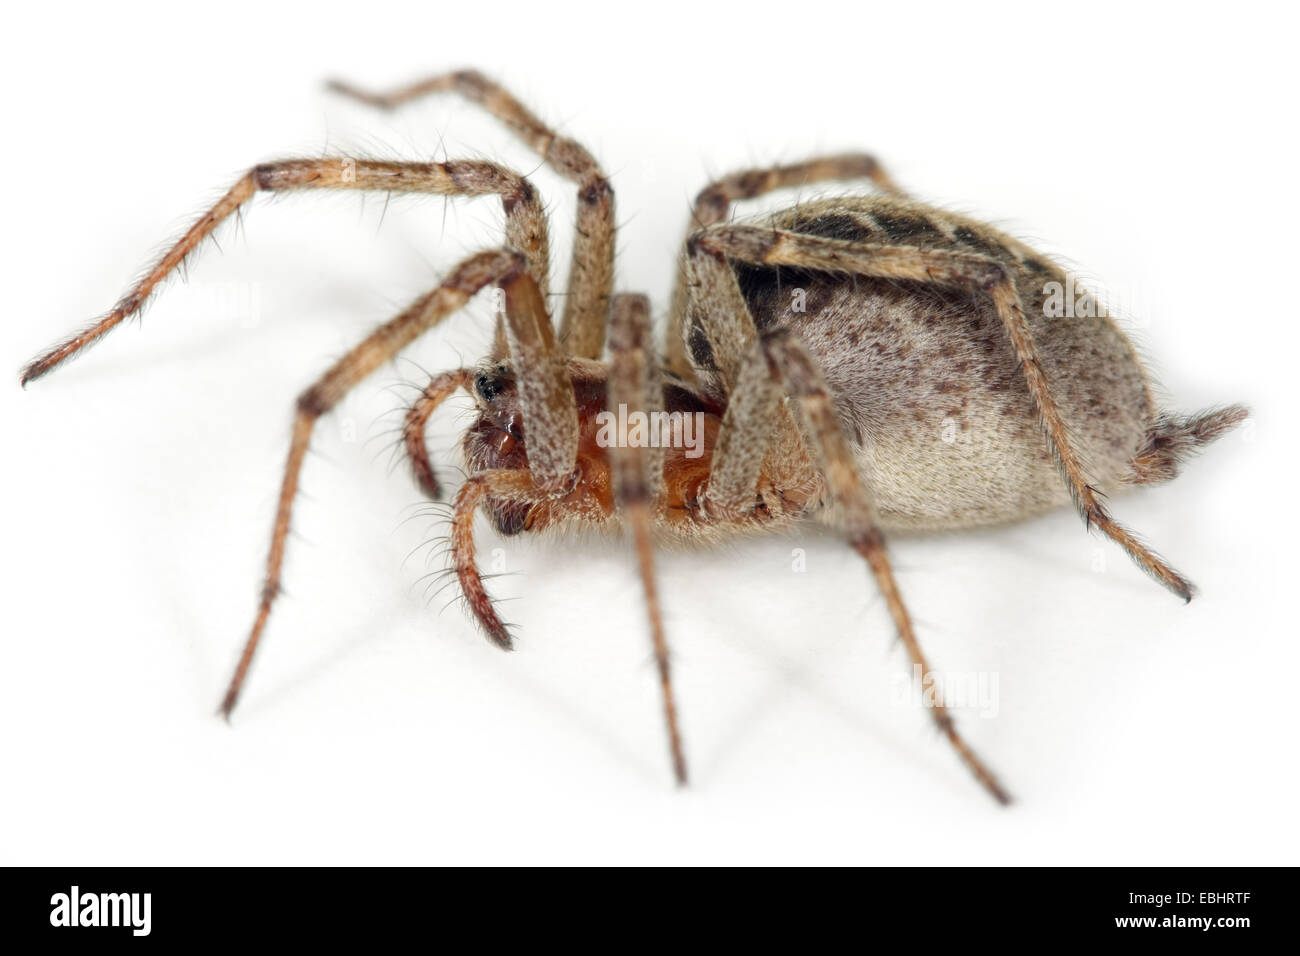 Une femme araignée Labyrinthe Agelena labyrinthica, vue de côté, sur un fond blanc. Partie de la famille Agelenidae. Banque D'Images